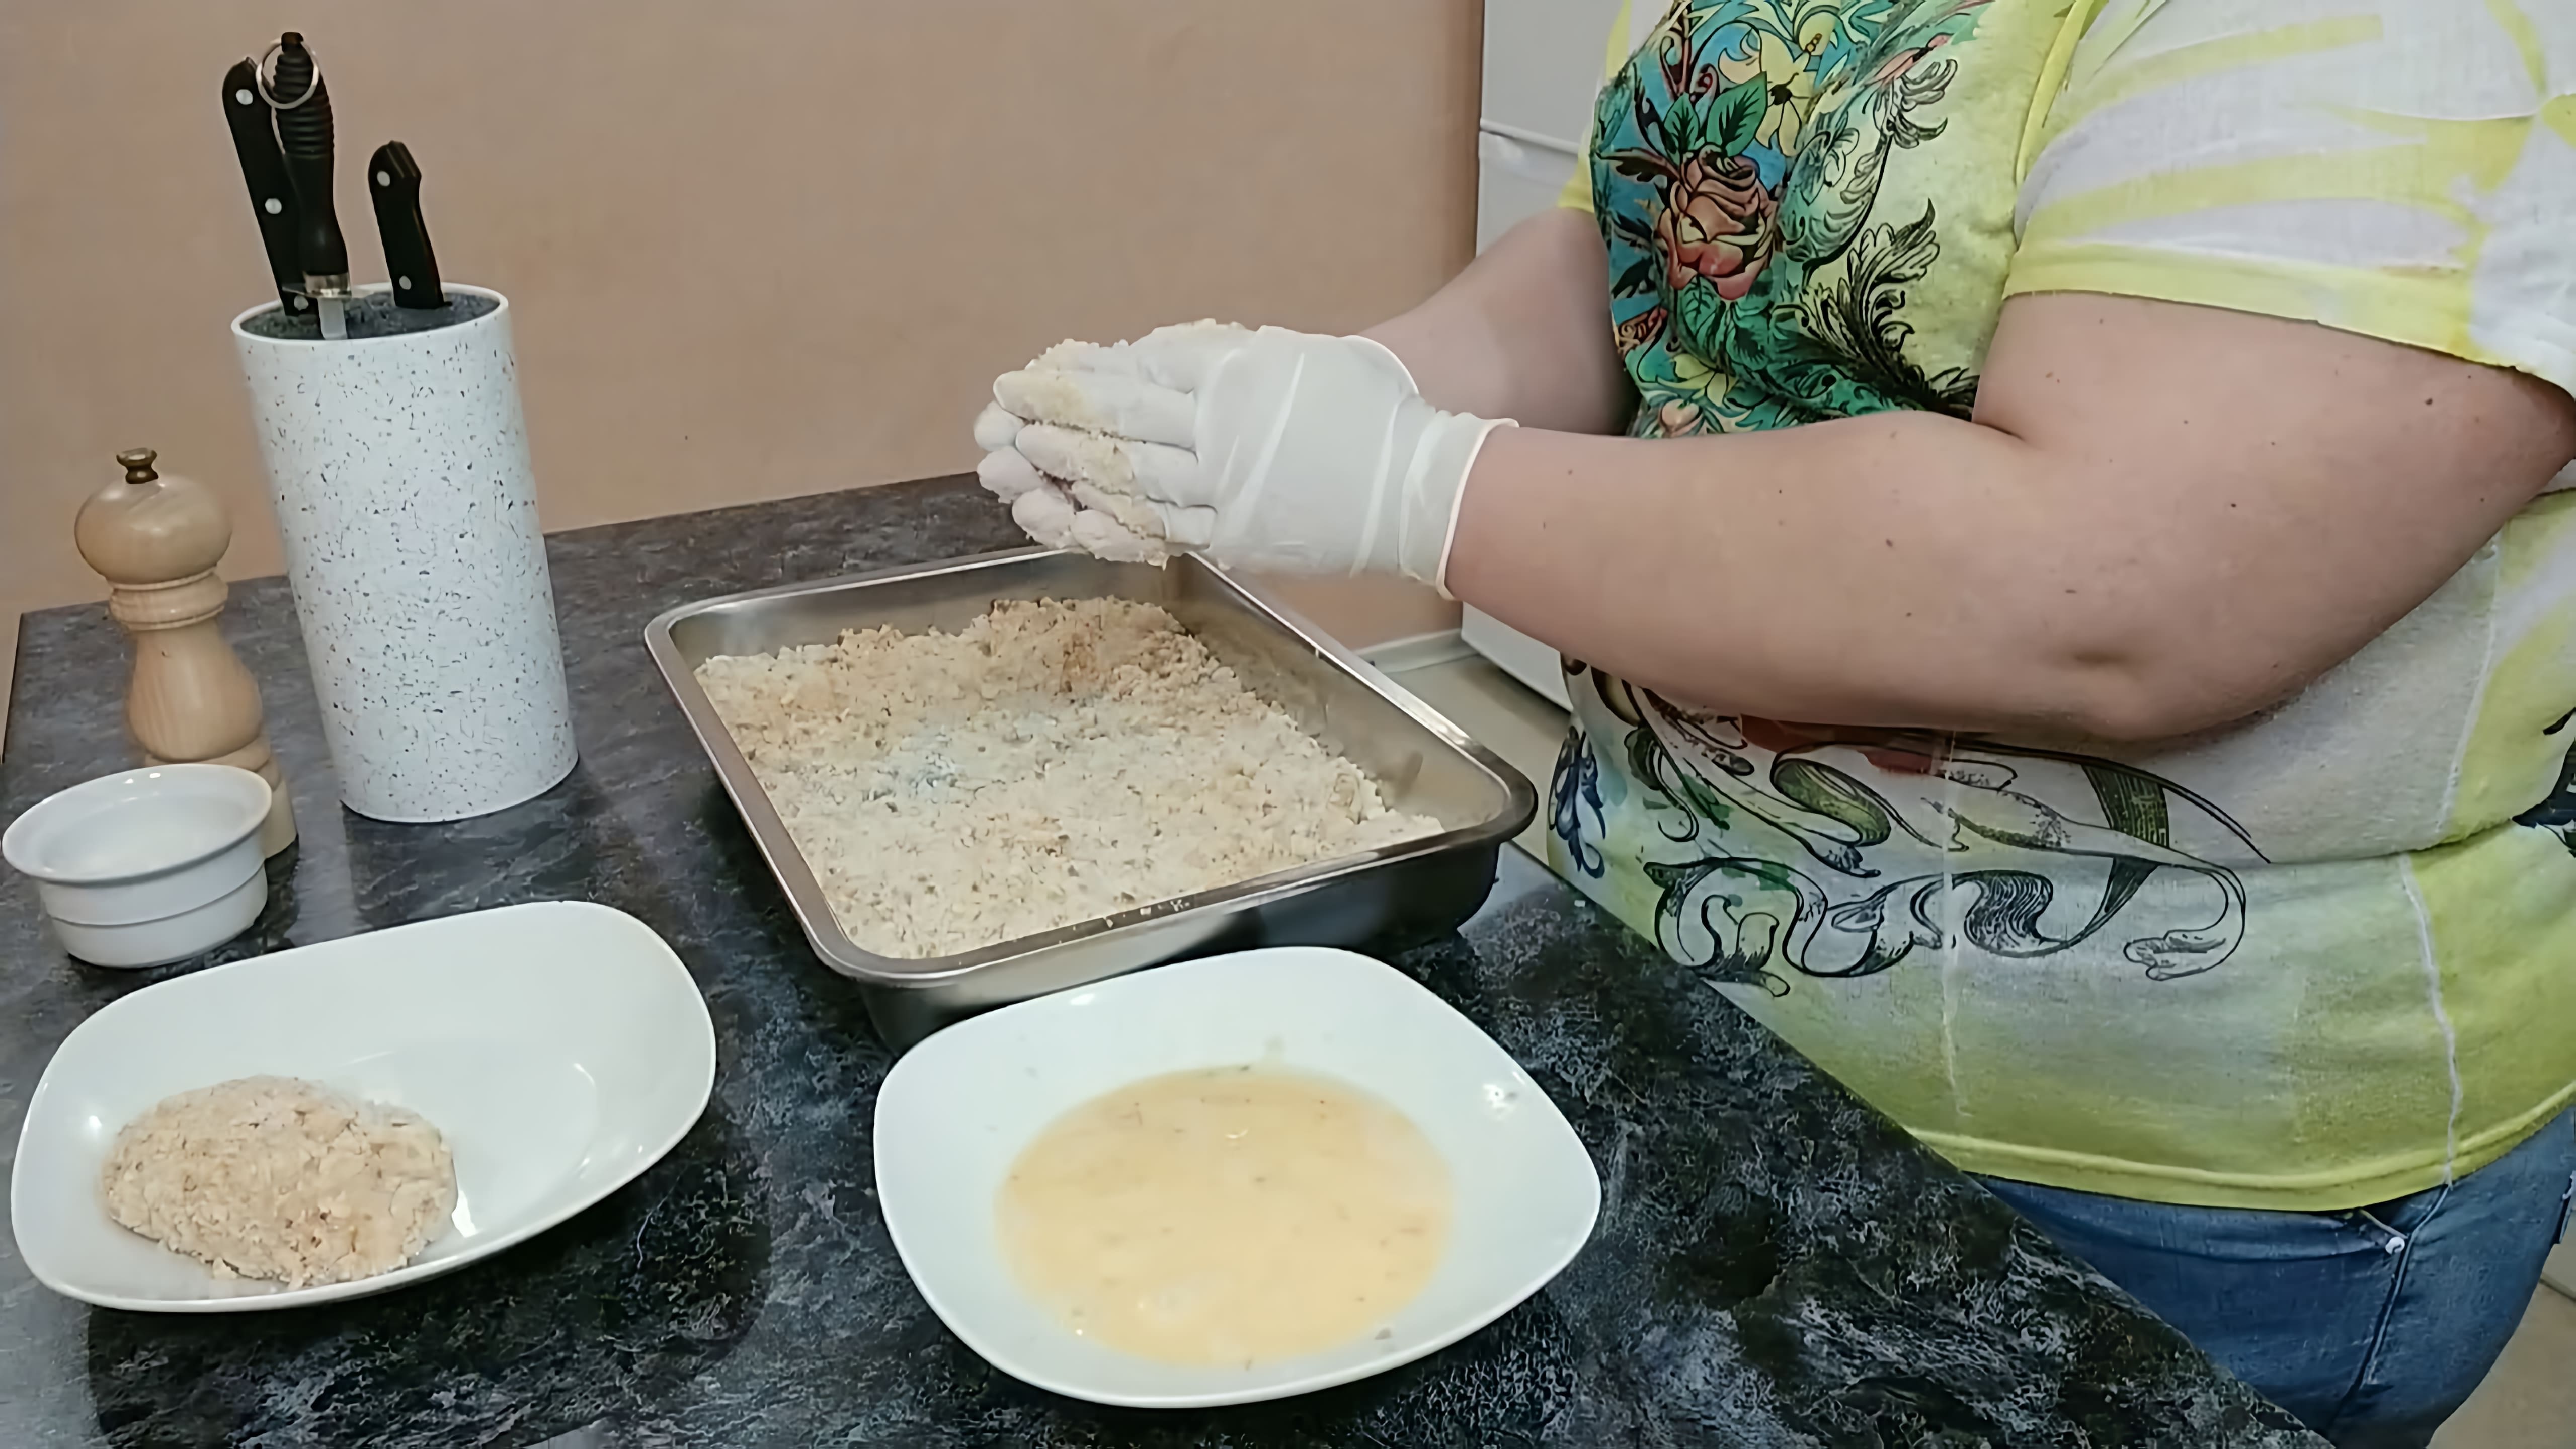 В этом видео демонстрируется процесс приготовления кордон блю - фаршированных котлет с ветчиной и сыром